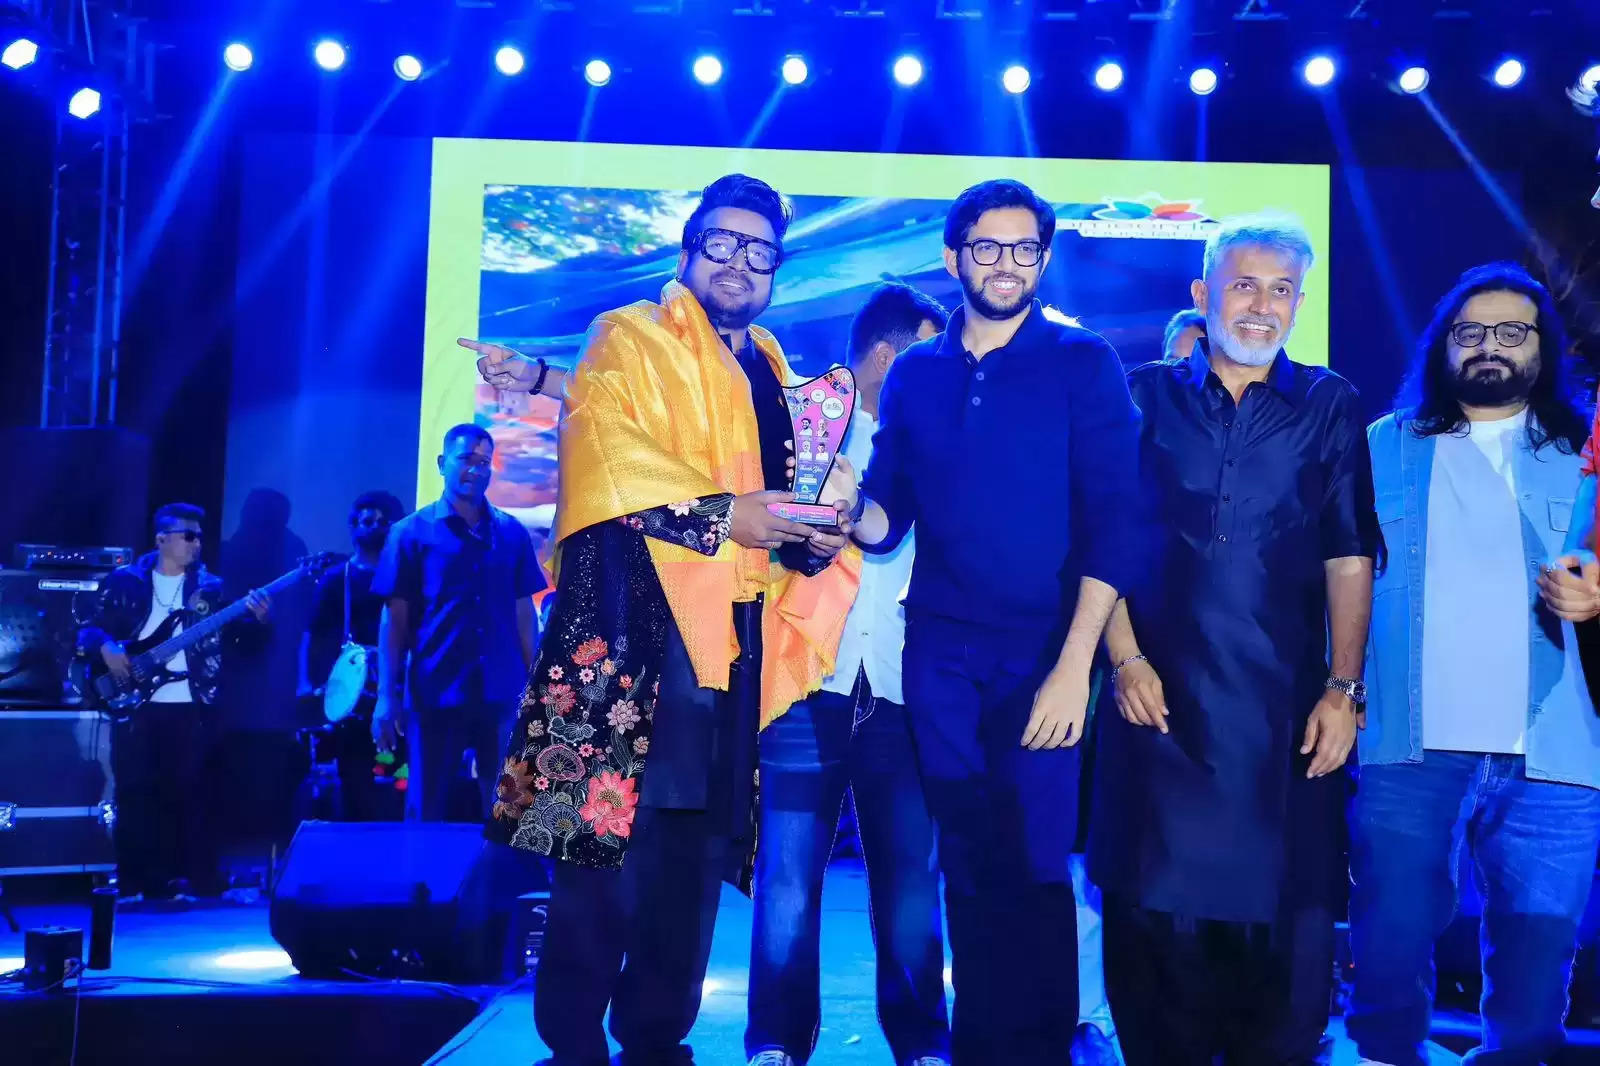 गायक शाहिद माल्या ने मंच पर आदित्य ठाकरे, प्रीतम और अन्य सम्मानित गणमान्य व्यक्तियों के साथ गौरव का क्षण साझा किया, नेटिज़न्स ने इस ख़ुशी के पल को किया पसंद